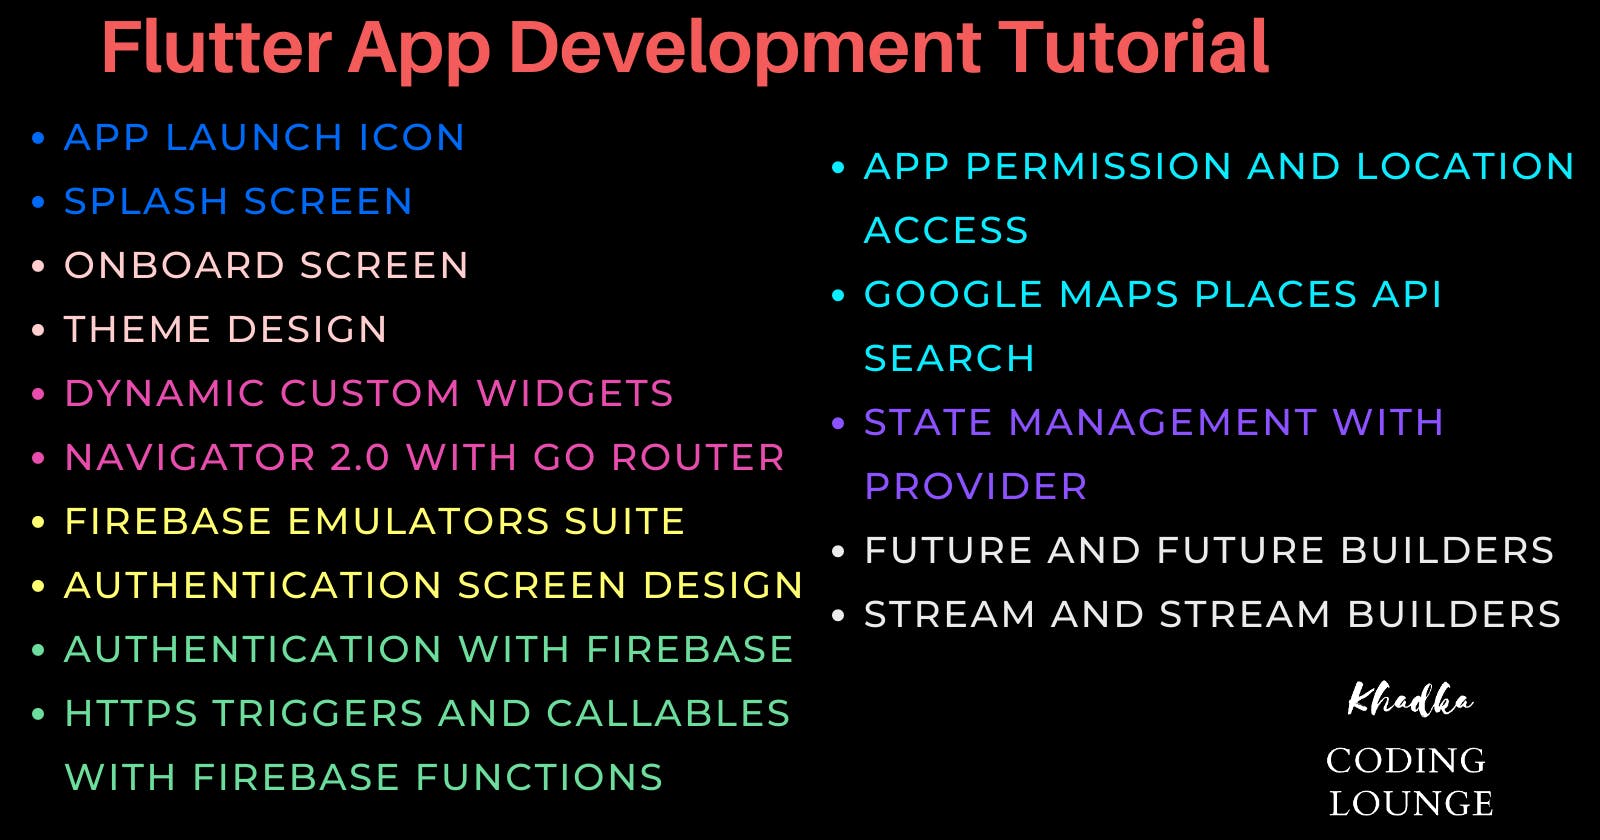 Flutter App Development Tutorial Series